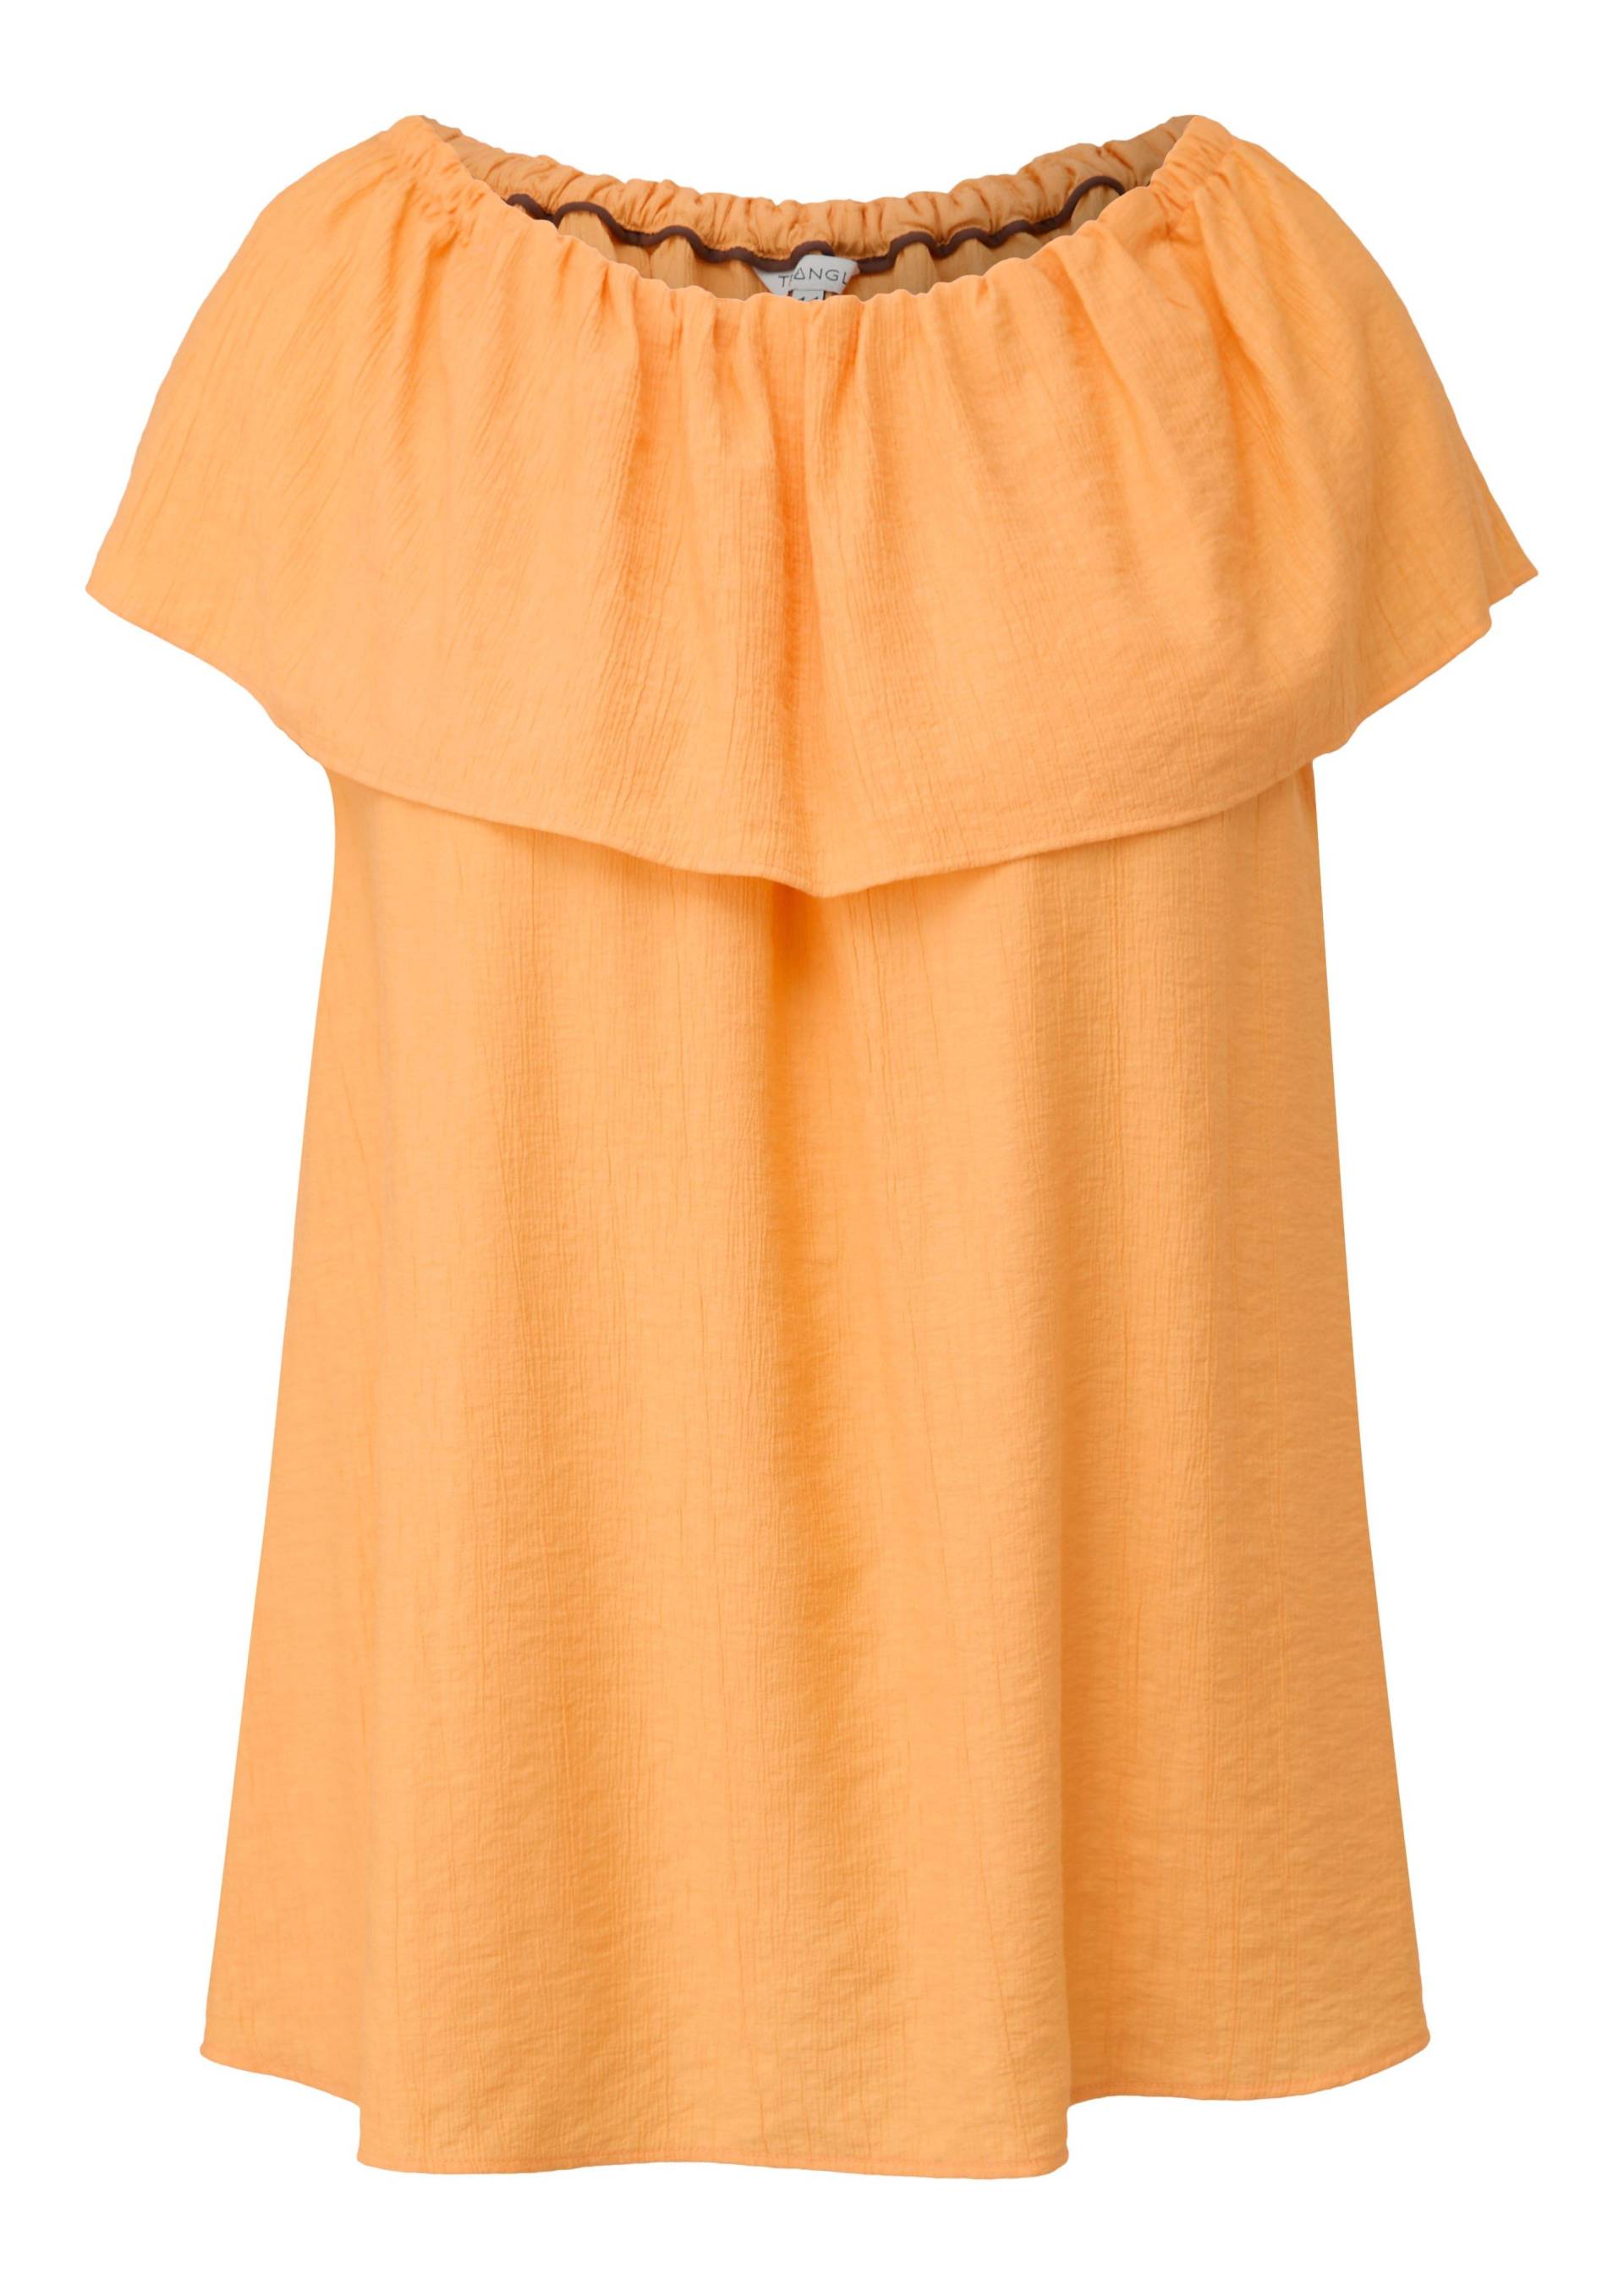 Große Größen: Ärmellose Bluse mit Carmenausschnitt, orange, Gr.44-54 von Triangle